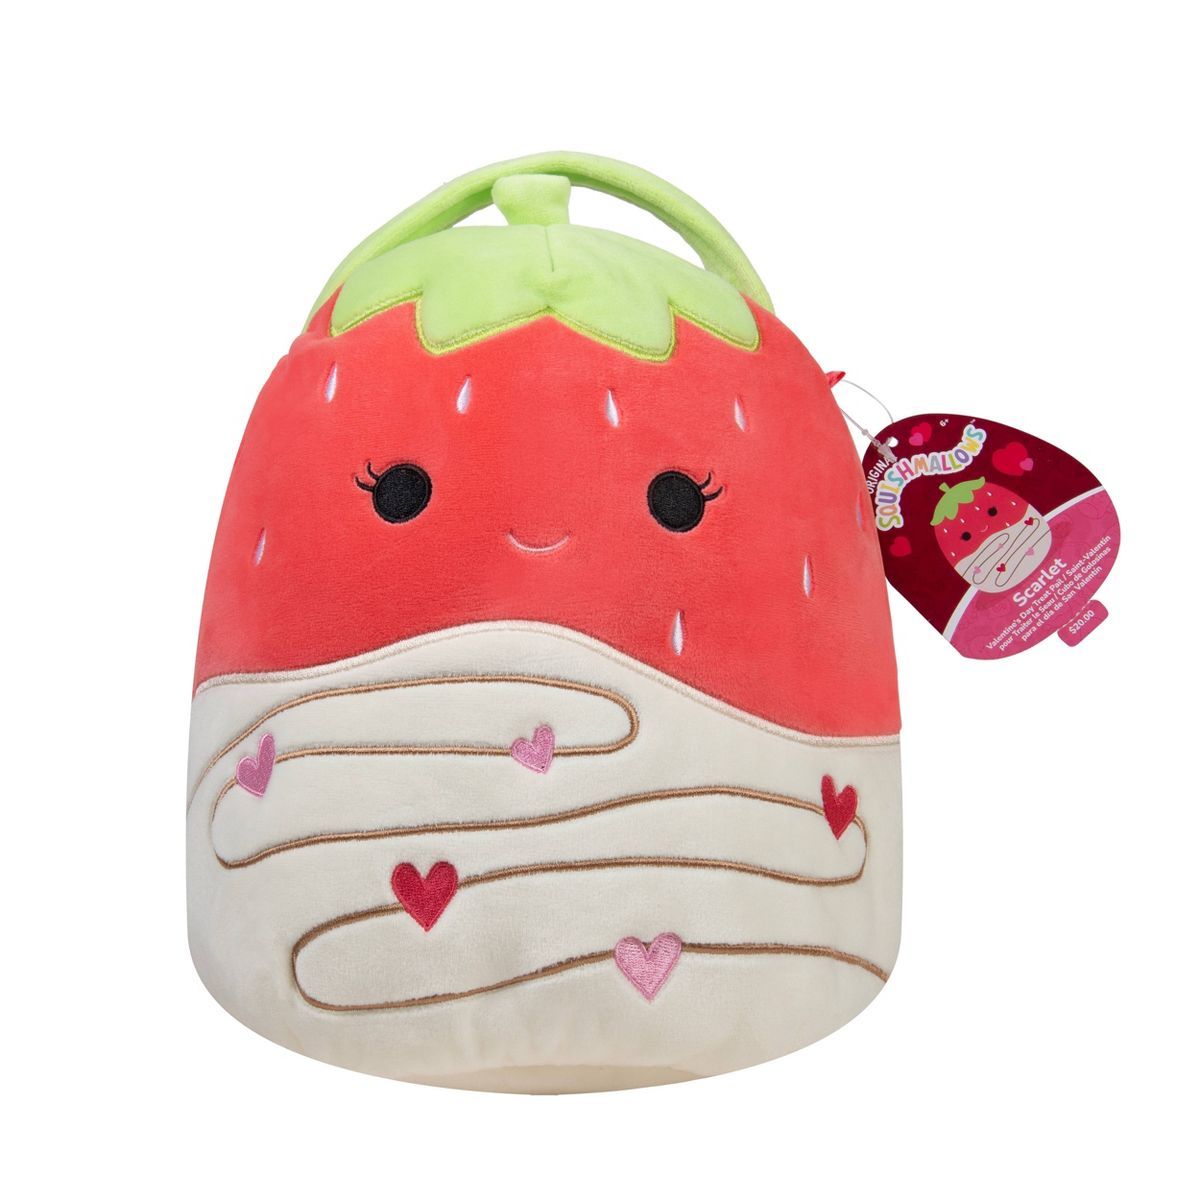 Squishmallows Scarlett Valentine's Bucket | Target